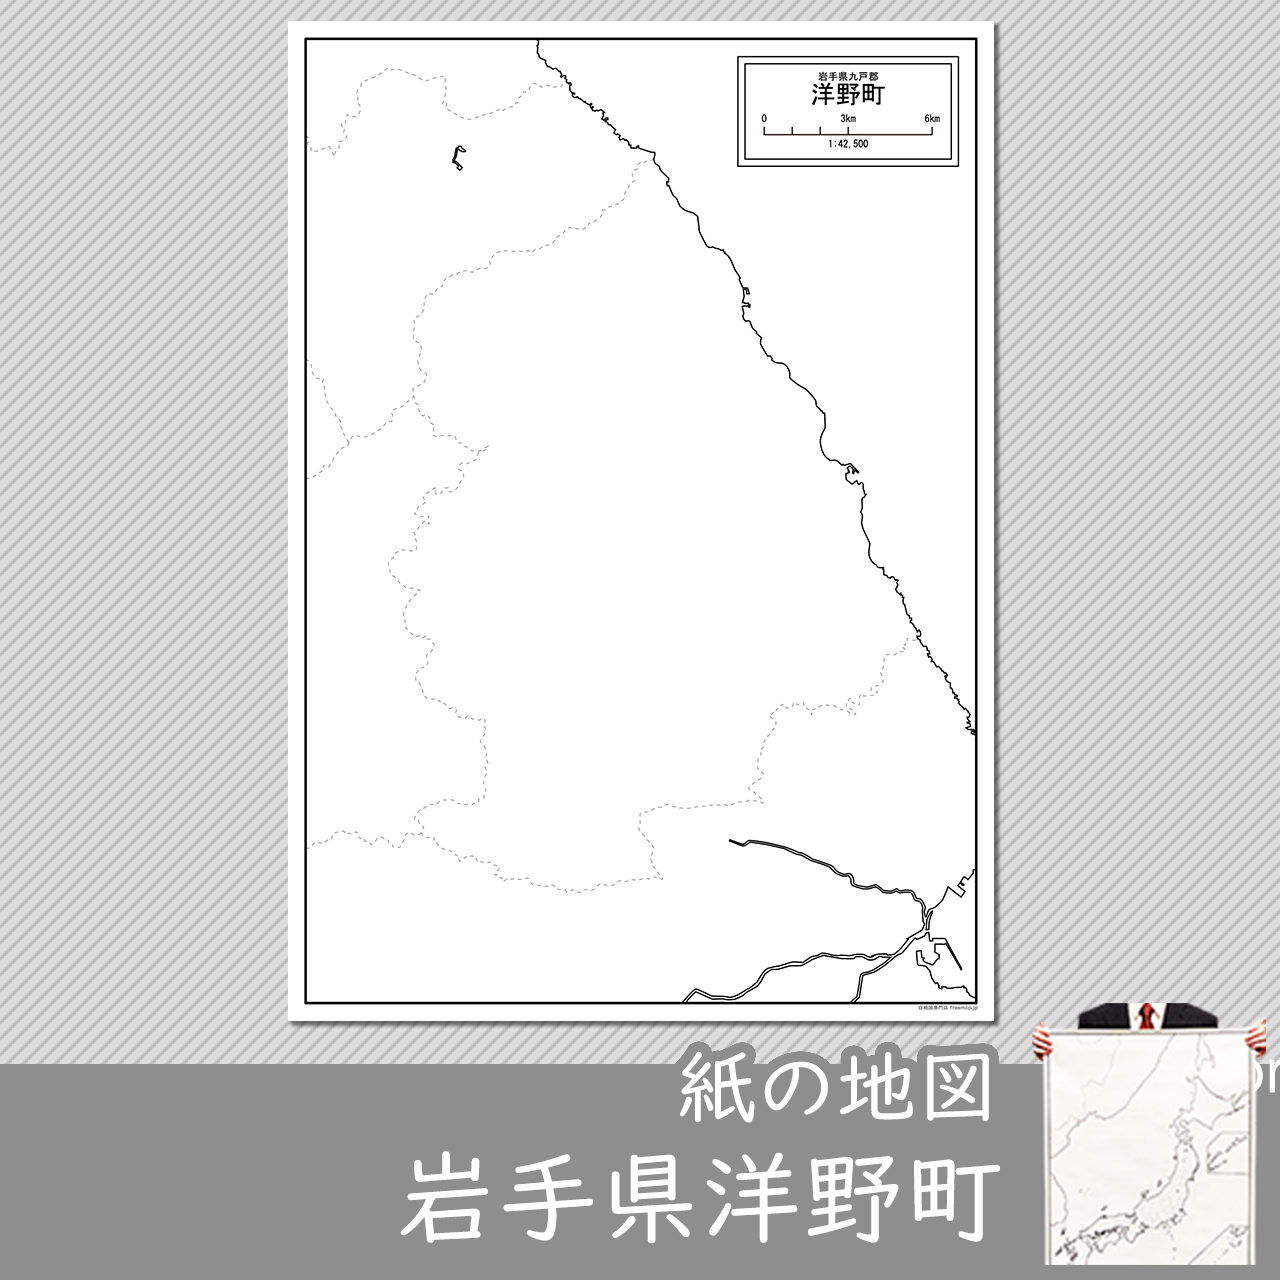 洋野町の紙の白地図のサムネイル